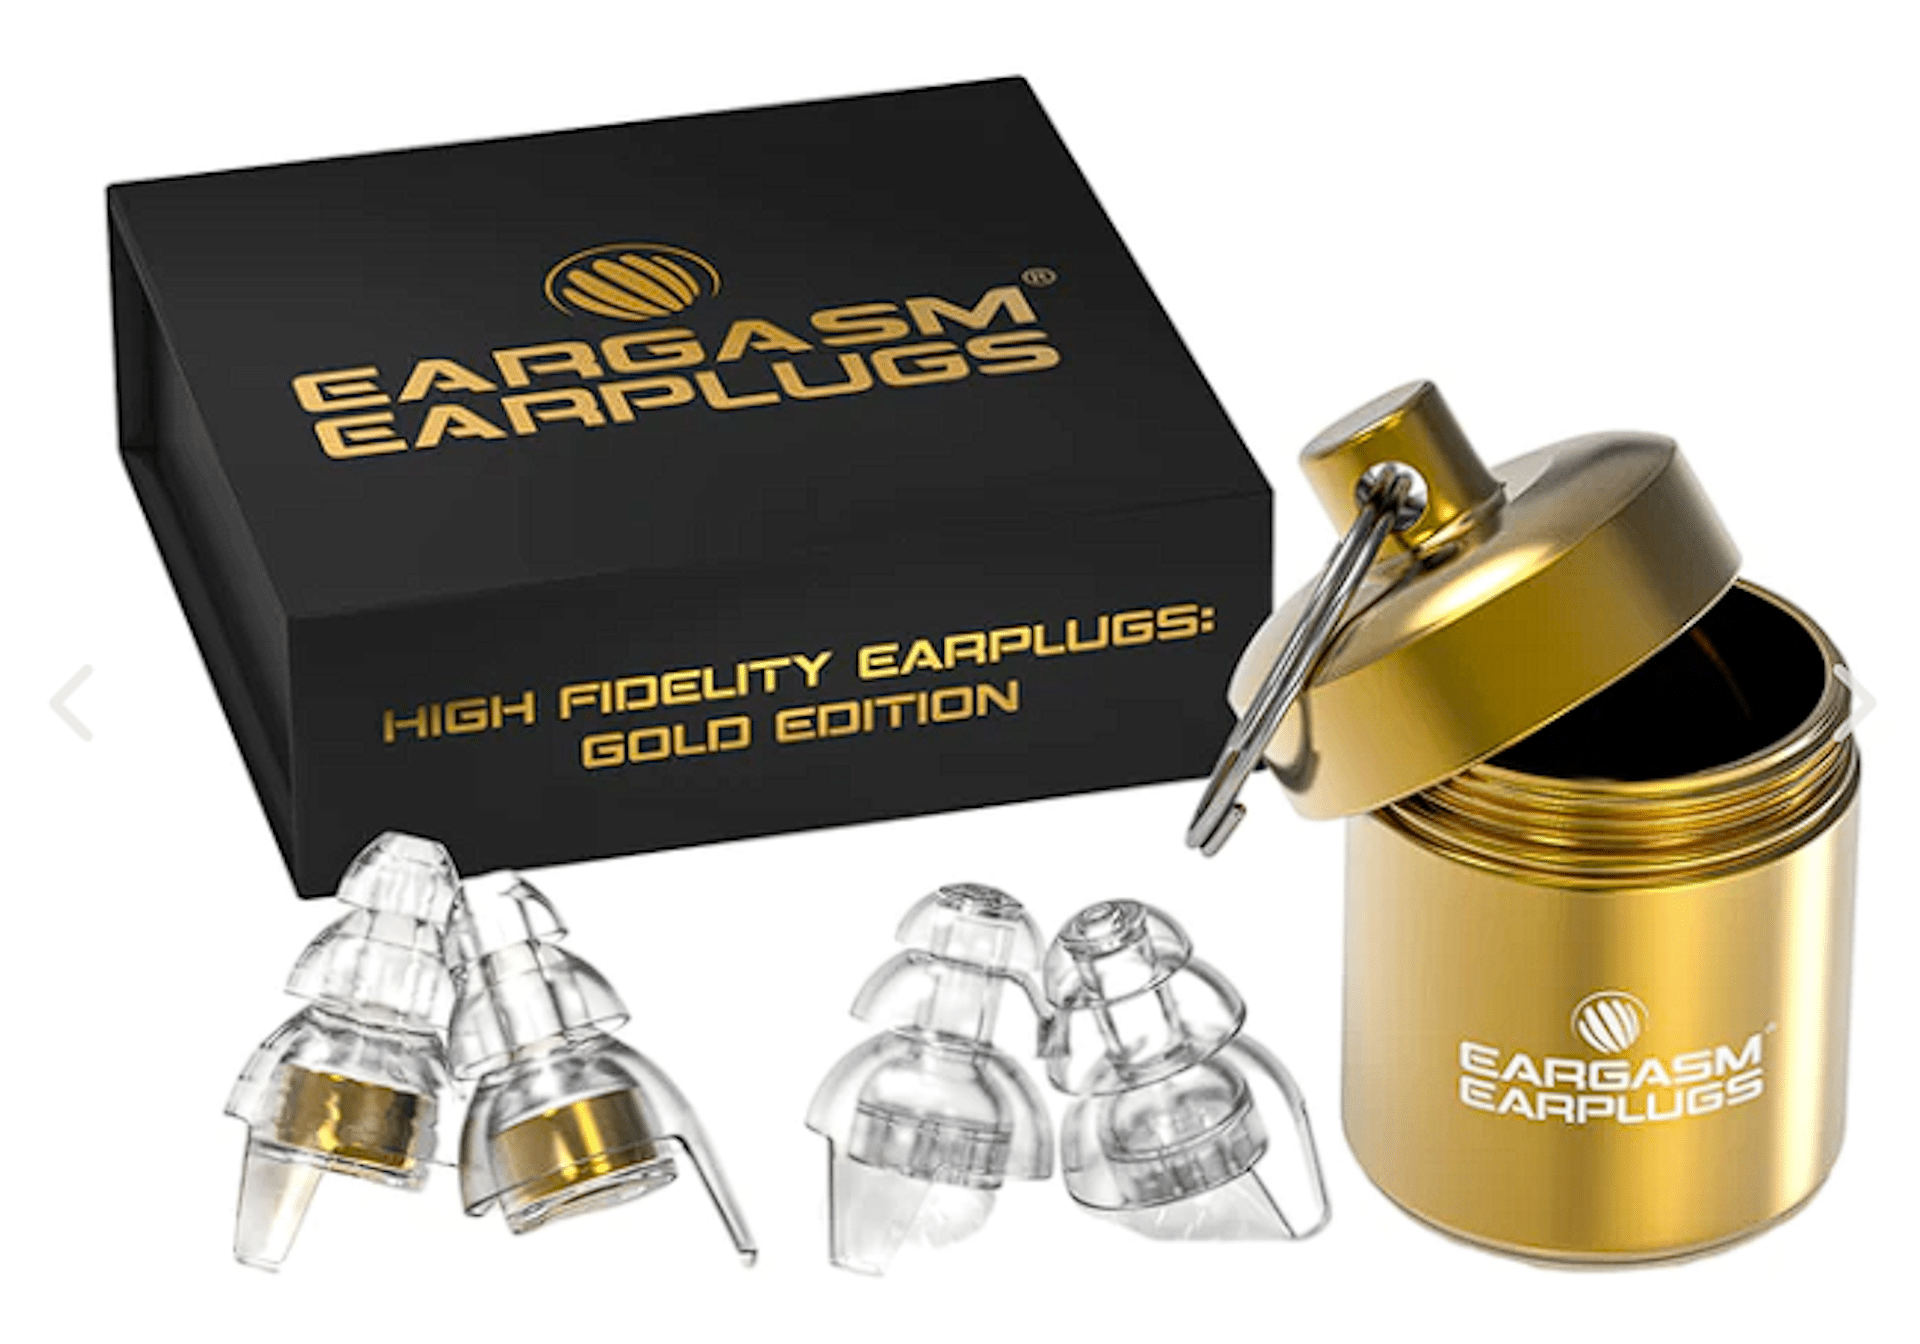 Eargasm Earplugs